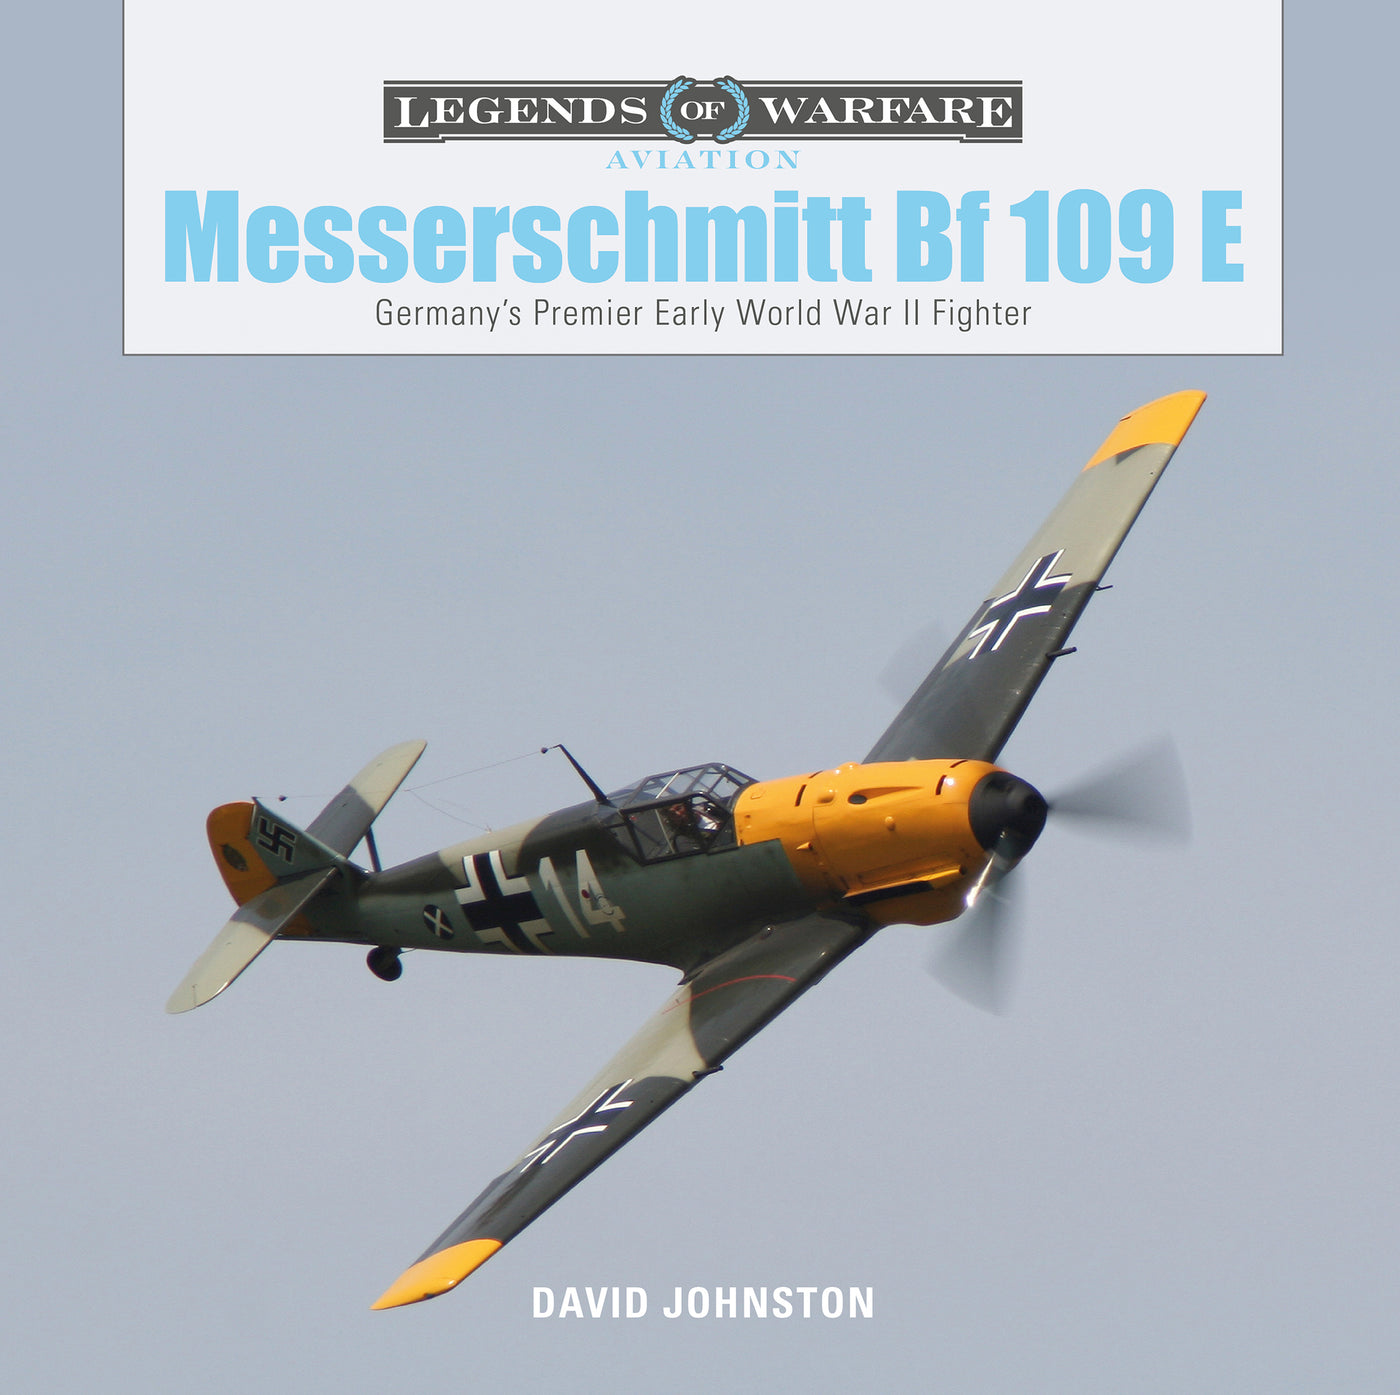 The Messerschmitt Bf_109_E